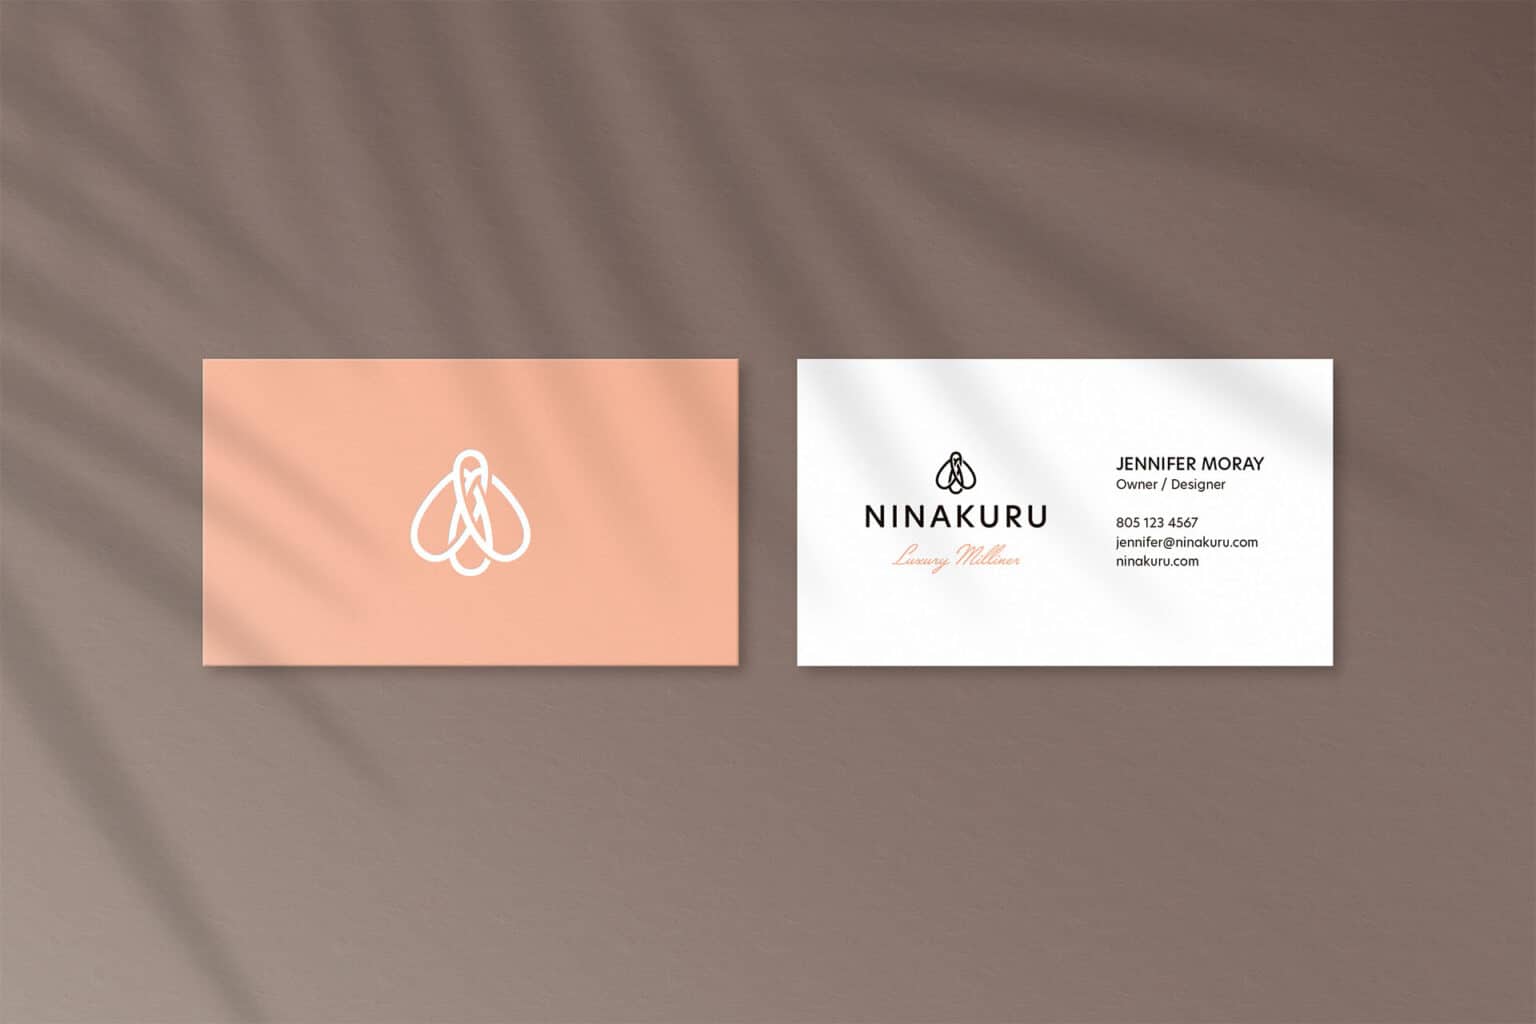 Business card design for Ninakuru.